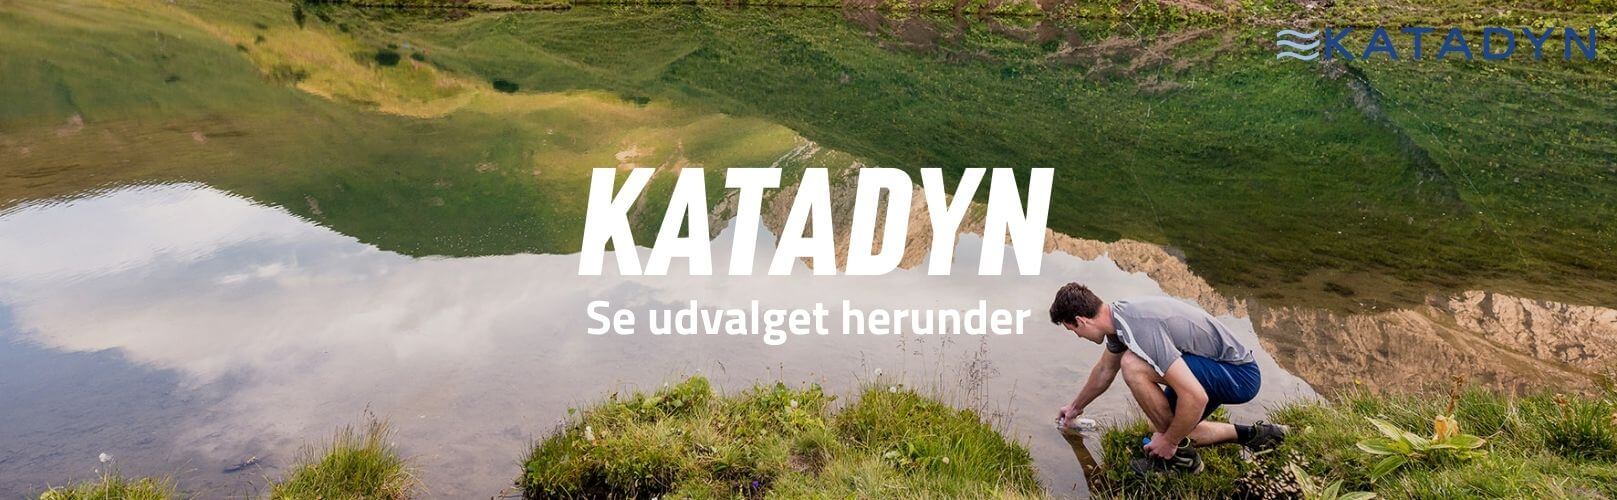 Katadyn brand banner